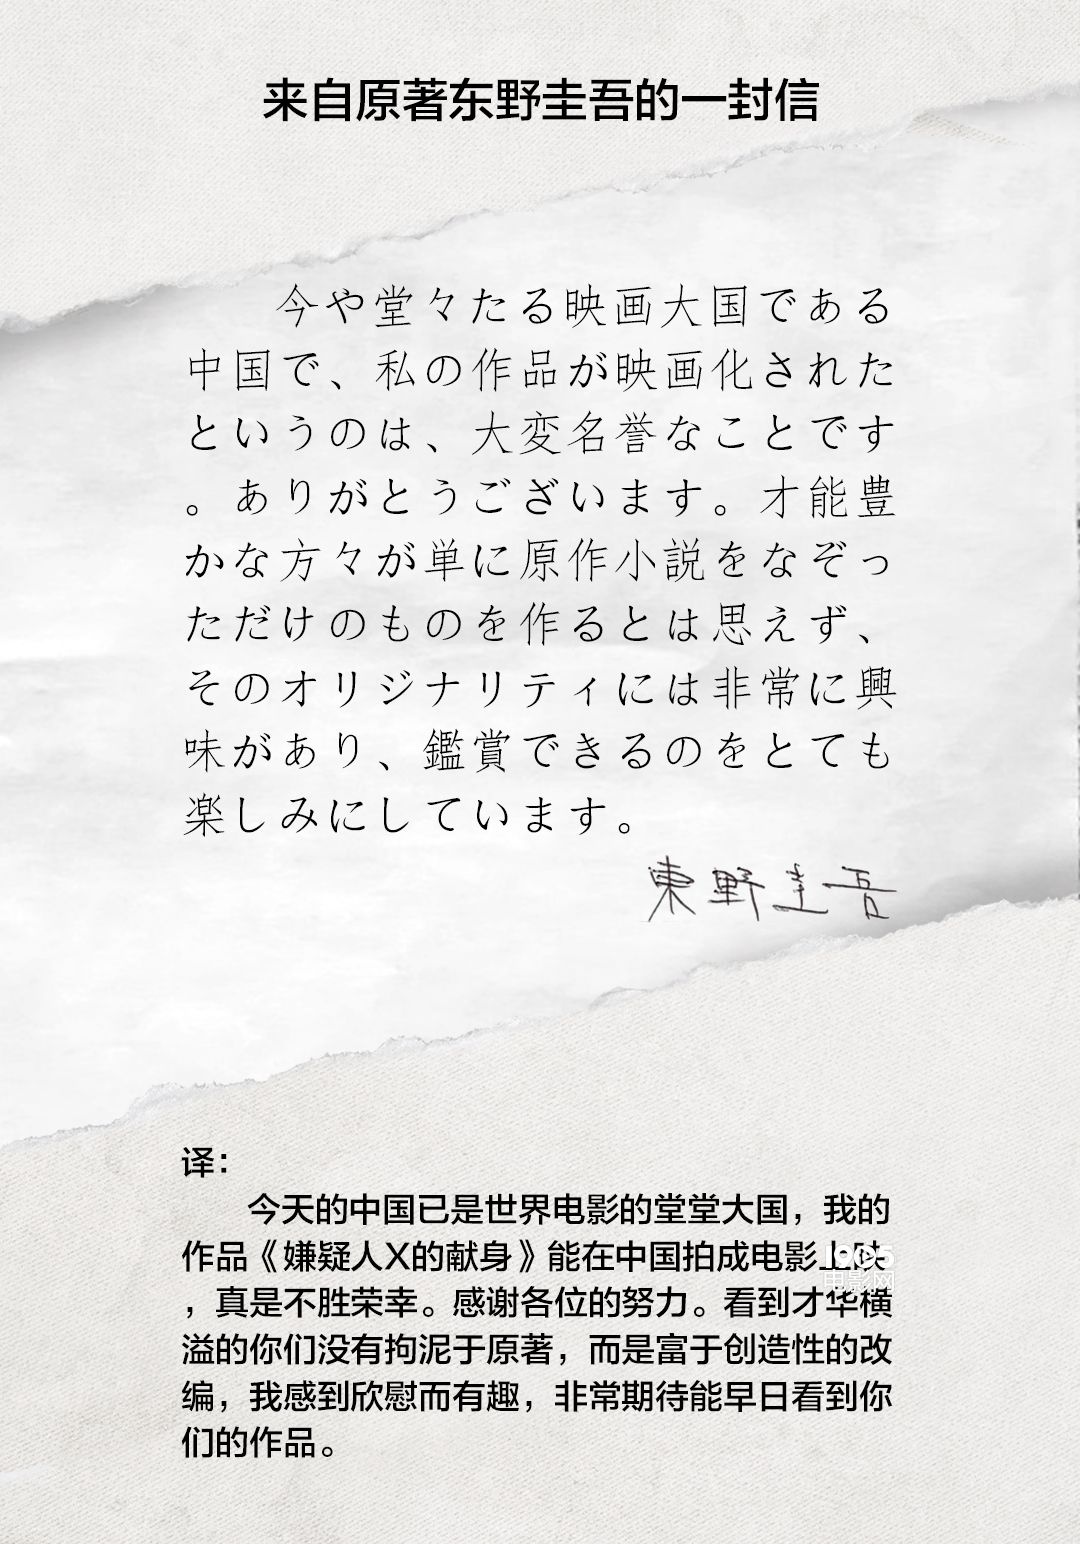 原作者东野圭吾写亲笔信 盛赞中国版《嫌疑人》